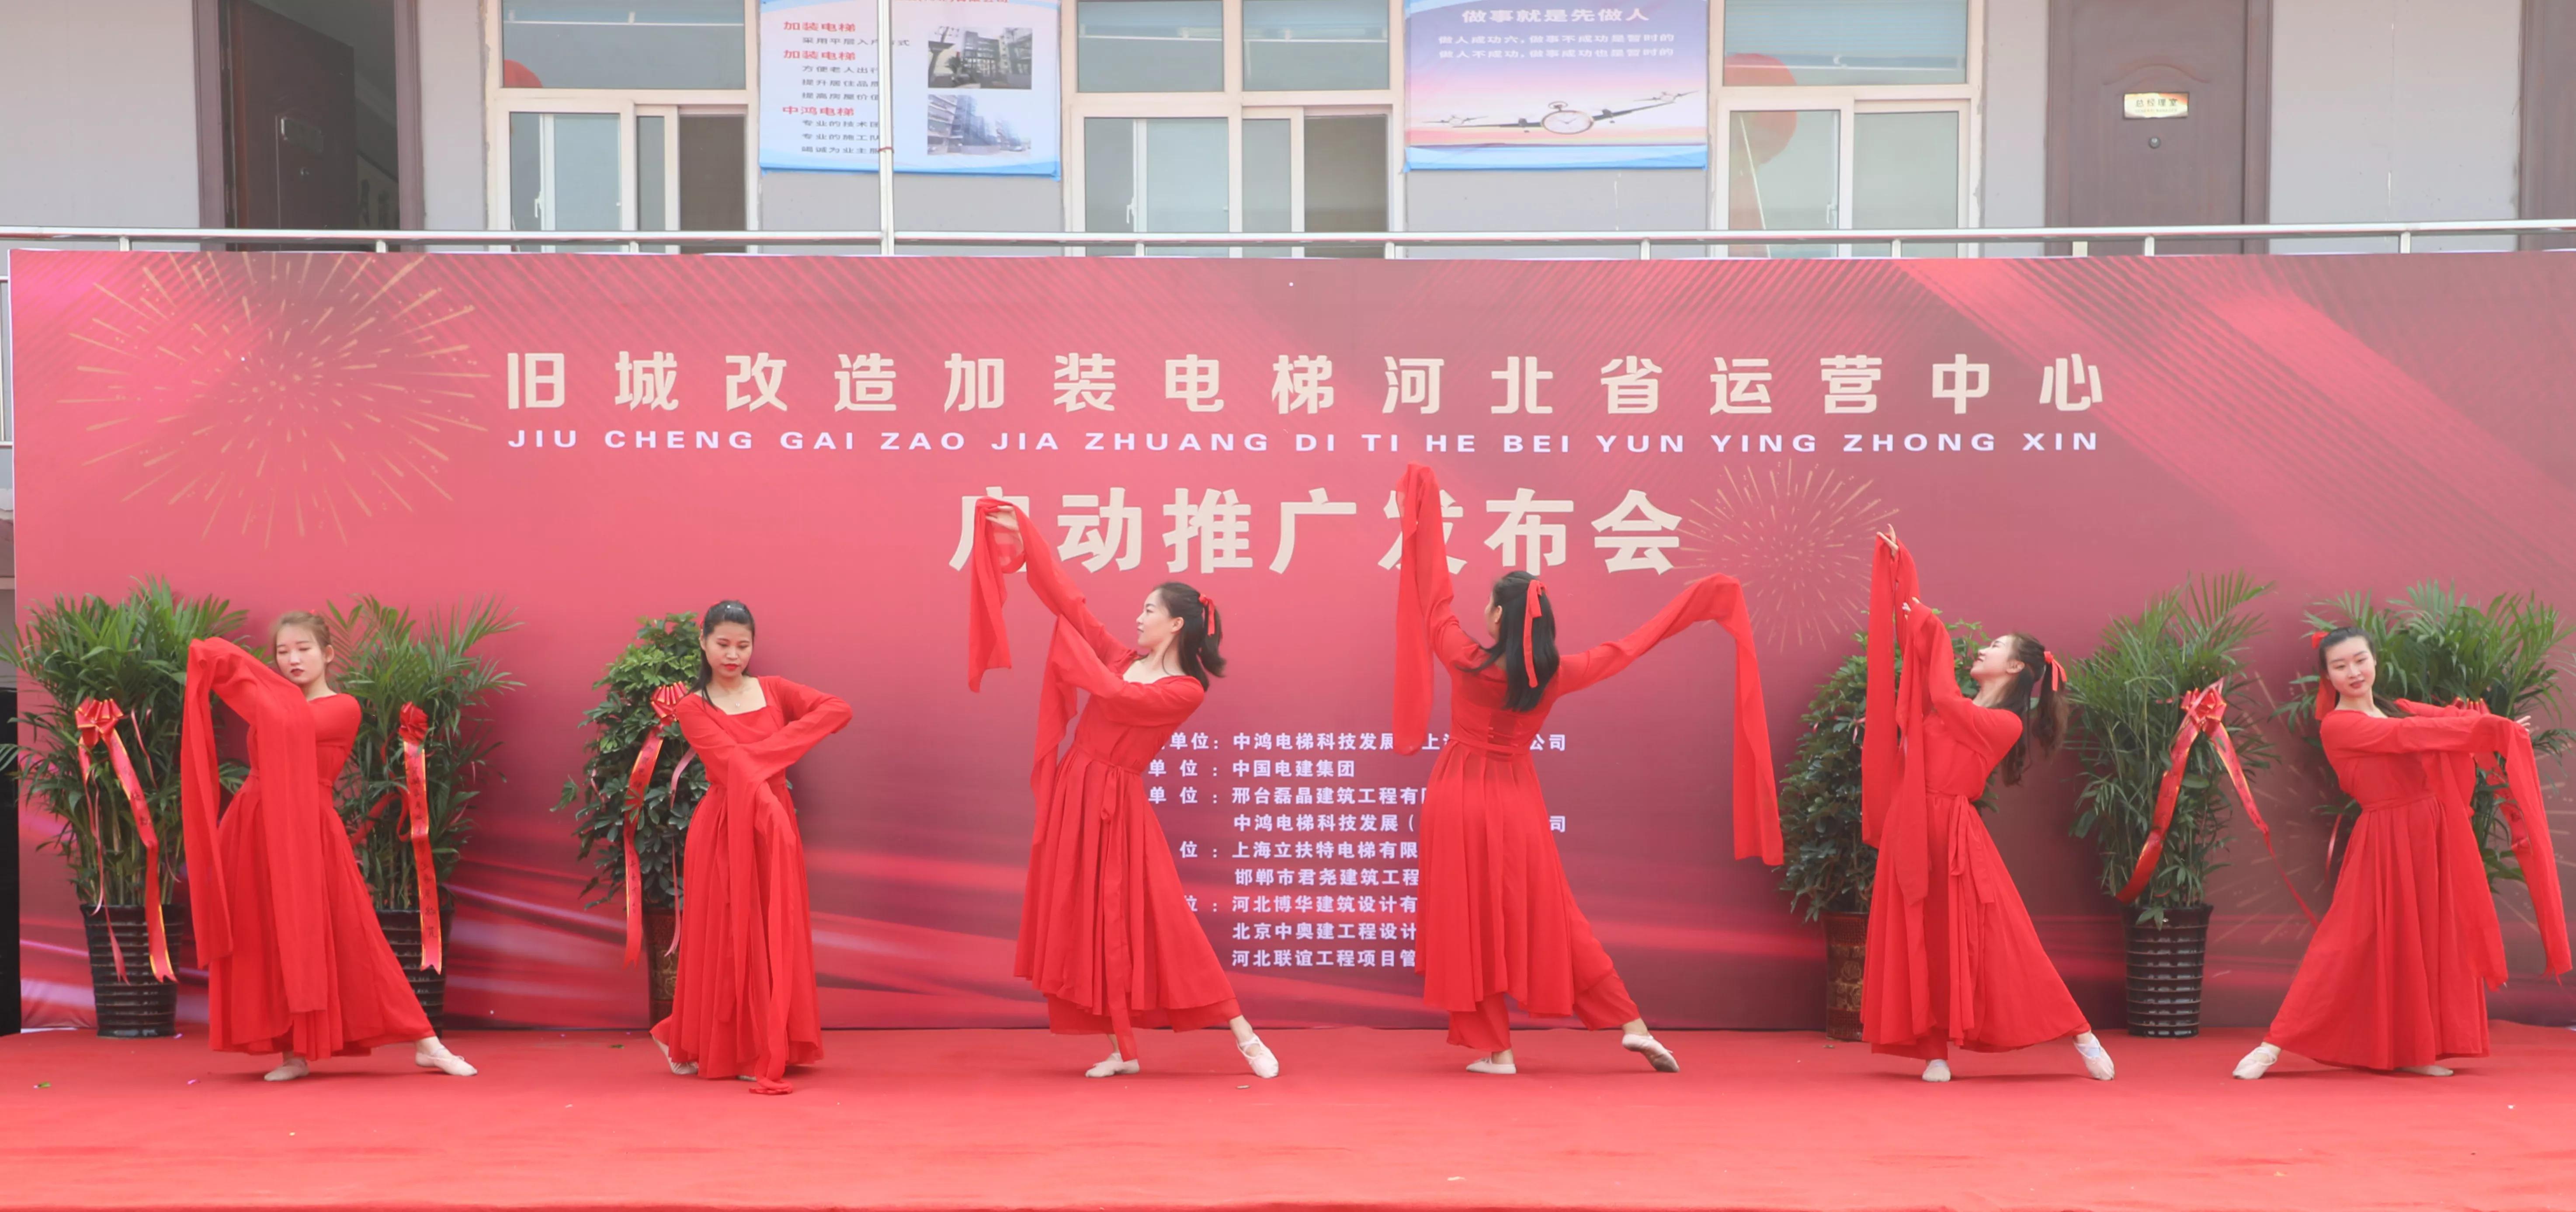 旧城改造加装电梯河北运营中心启动仪式在河北邢台隆重举行